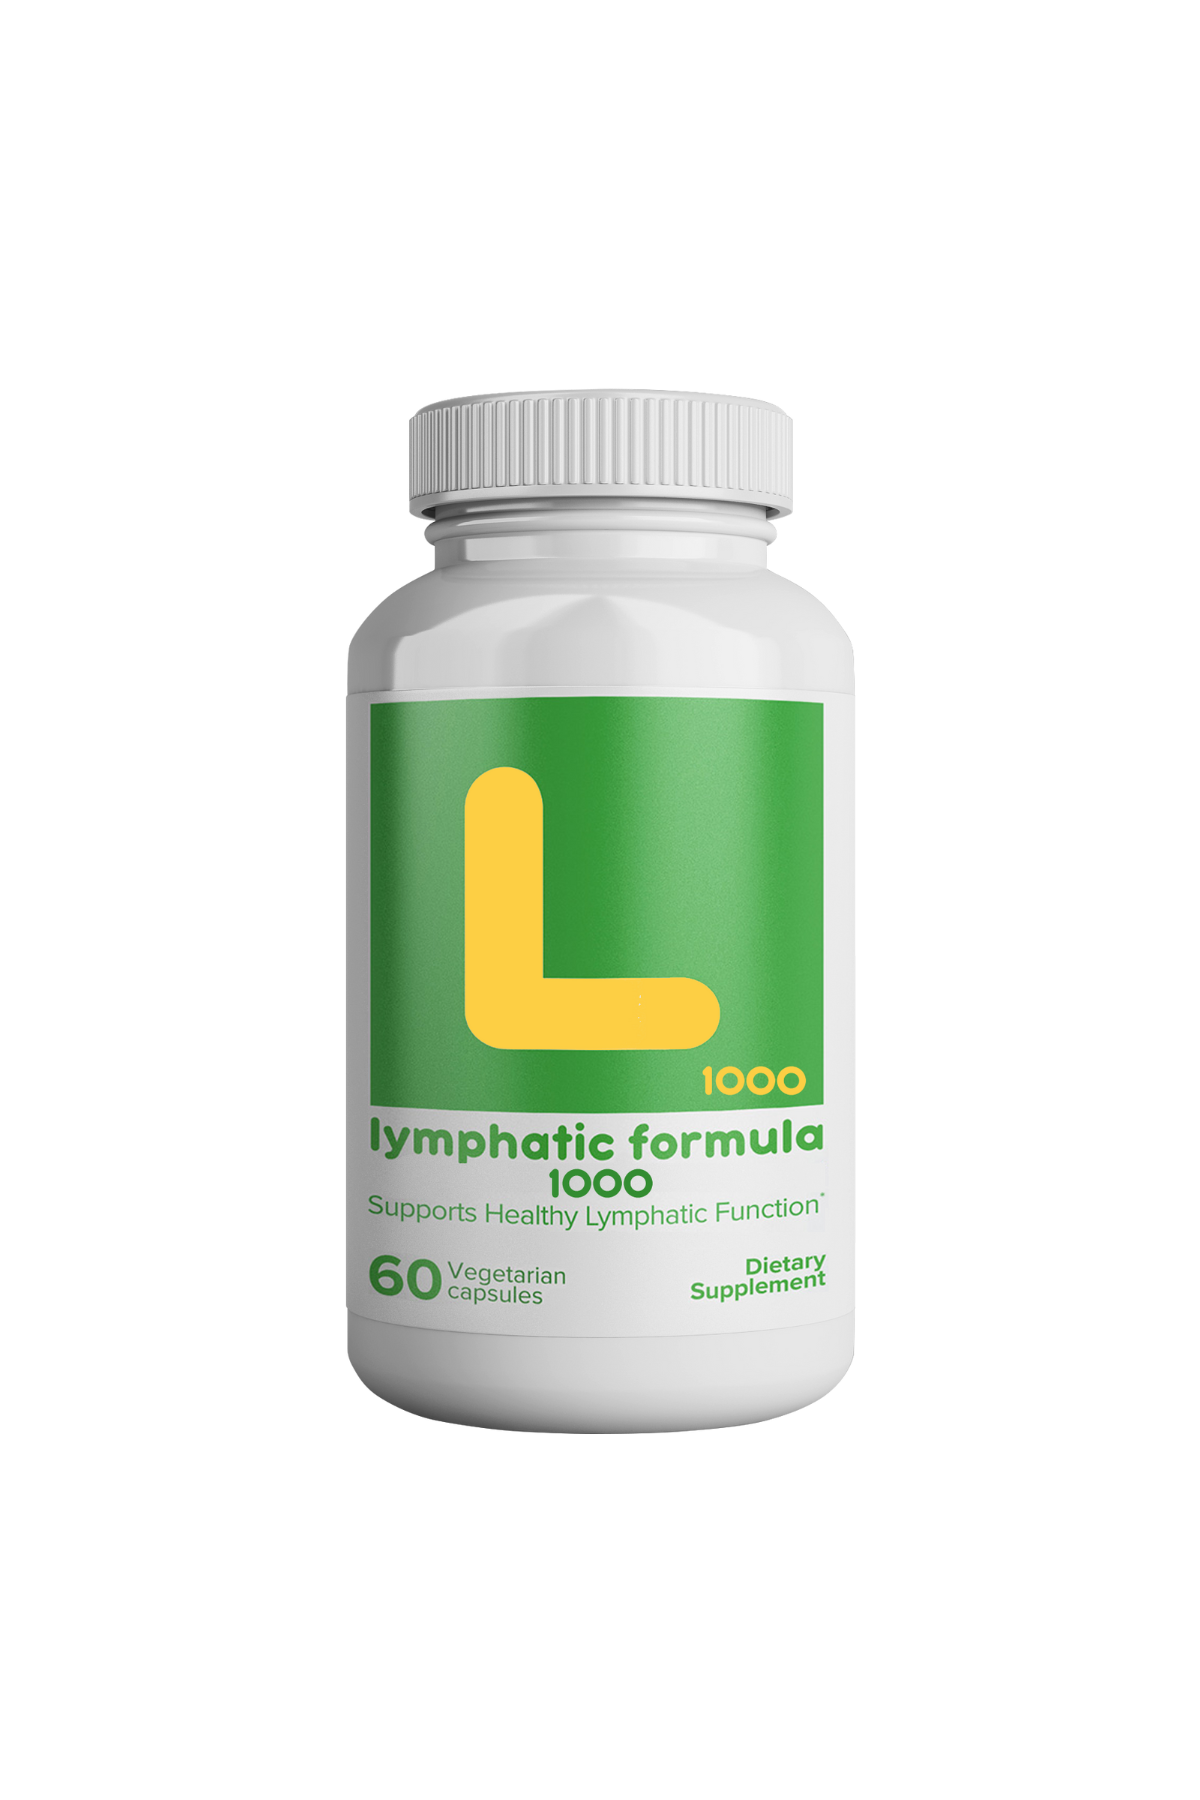 lymphatic formula 1000